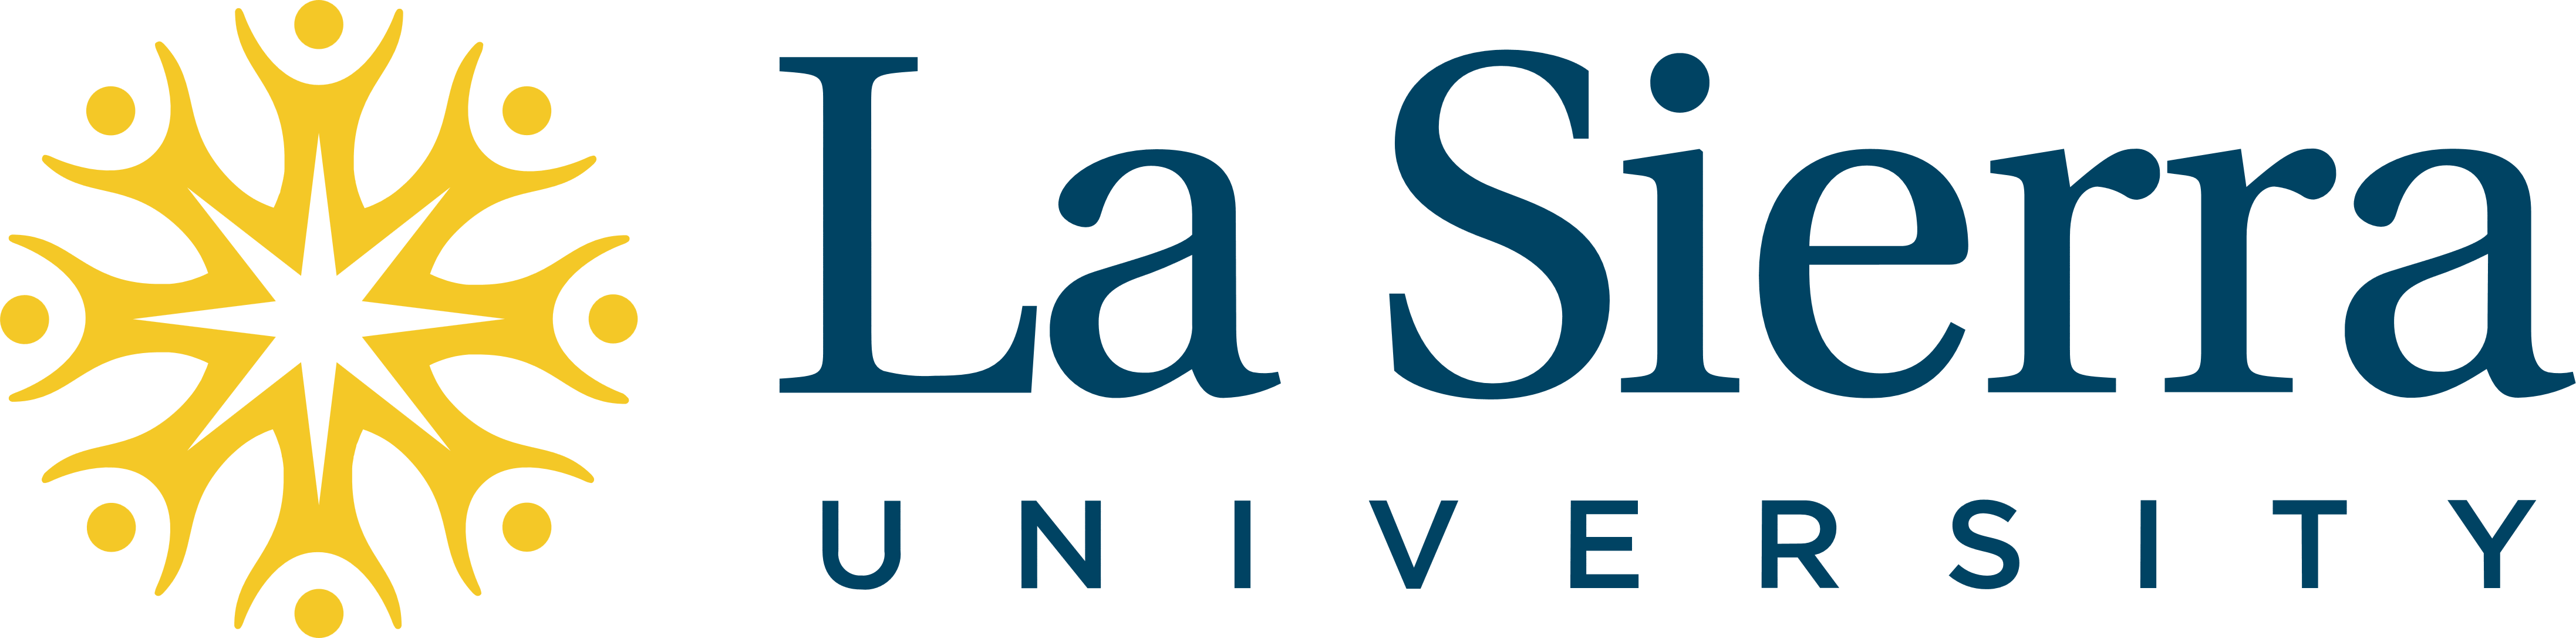 La Sierra University logo, logotype